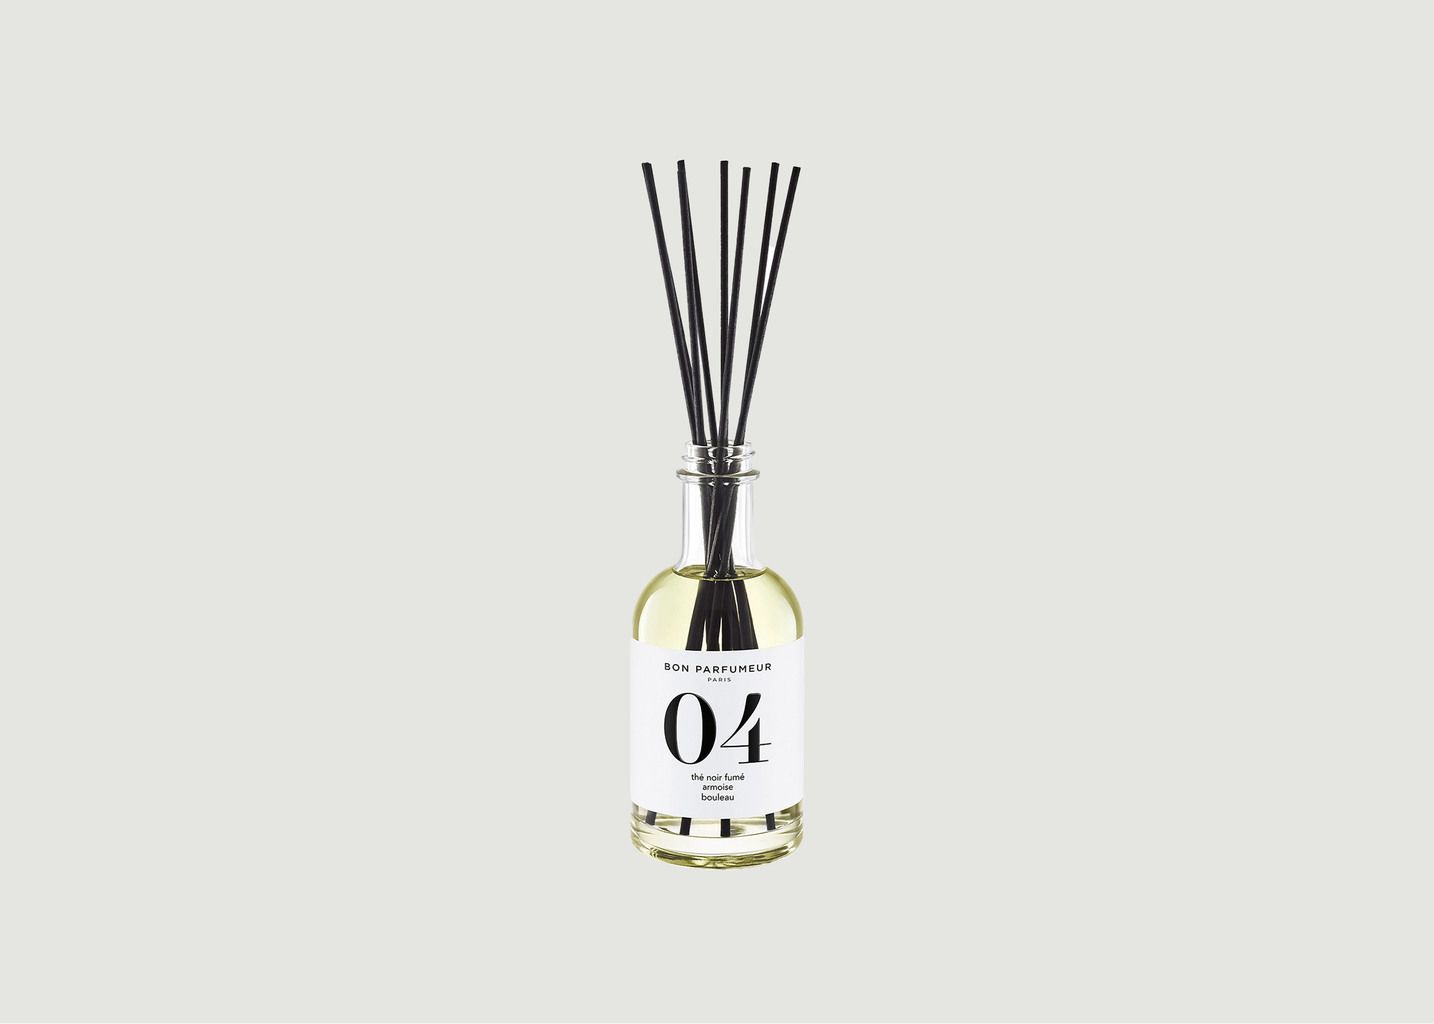 Diffuseur de Parfum d’Intérieur 04 : Thé Noir Fumé, Armoise, Bouleau - Bon Parfumeur